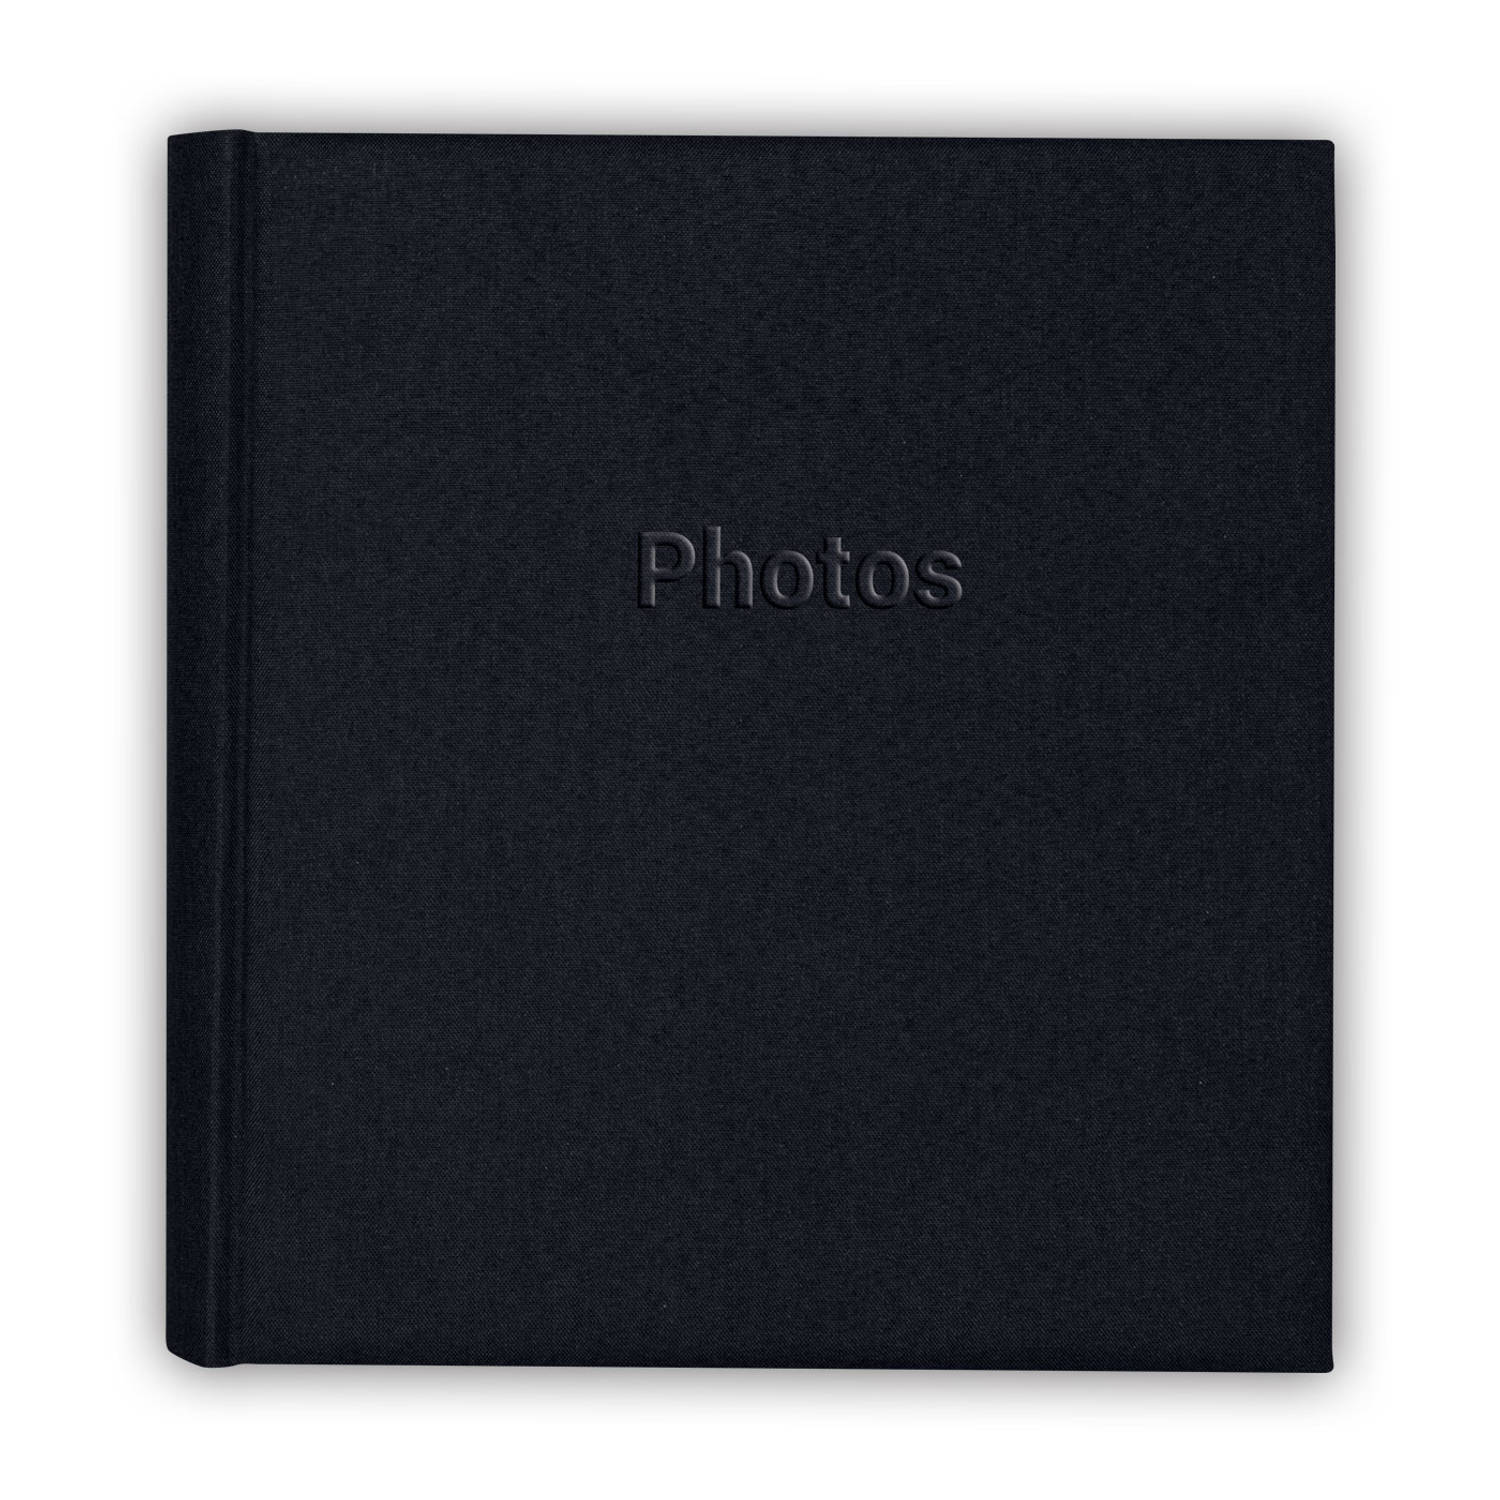 Nodig hebben Heerlijk Grootste Fotoboek/fotoalbum met 30 paginas zwart 29 x 31 x 4 cm - Fotoalbums |  Blokker